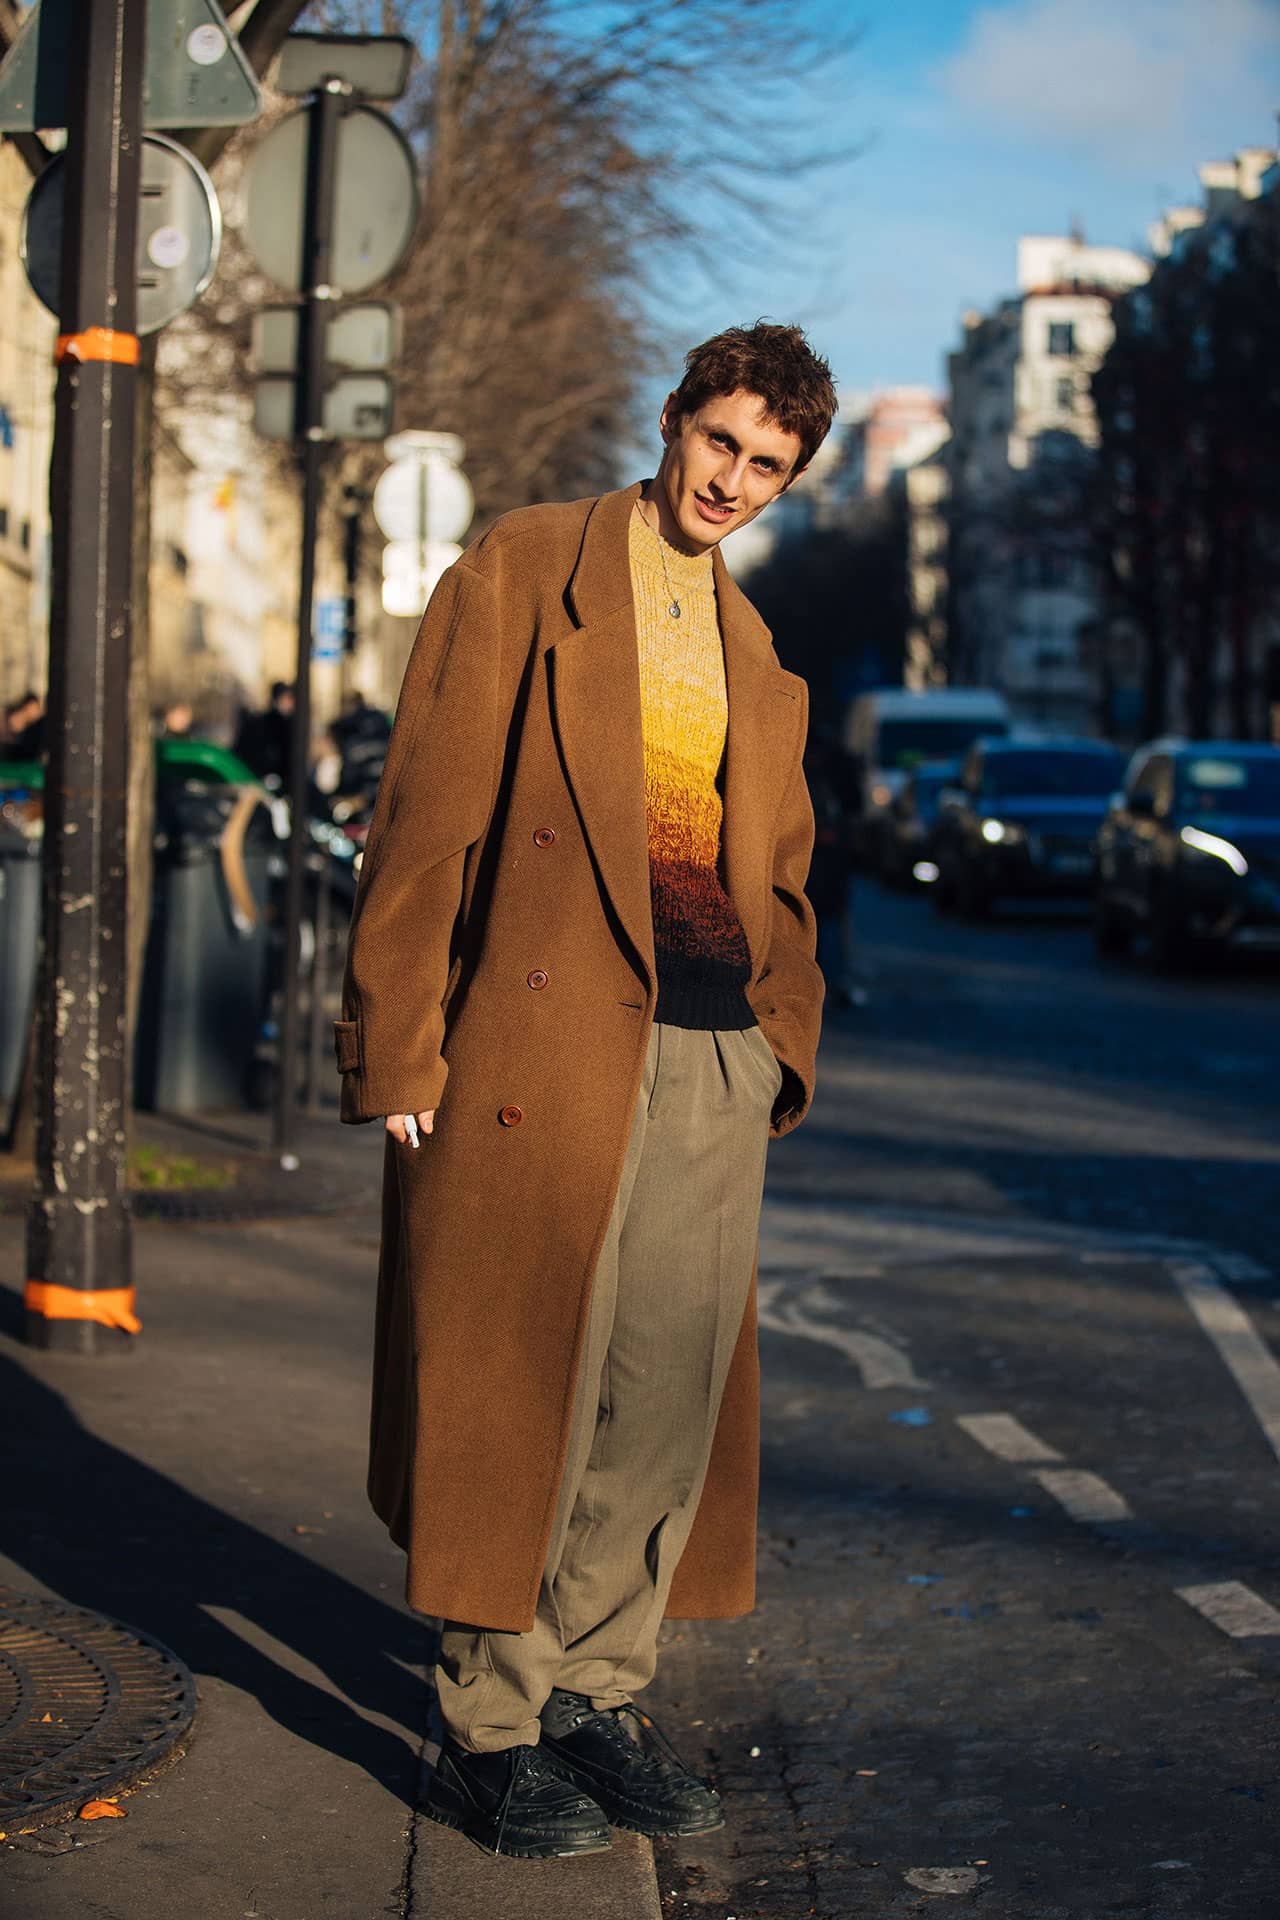 Henry Kitcher Autumn Coat Outfit Paris